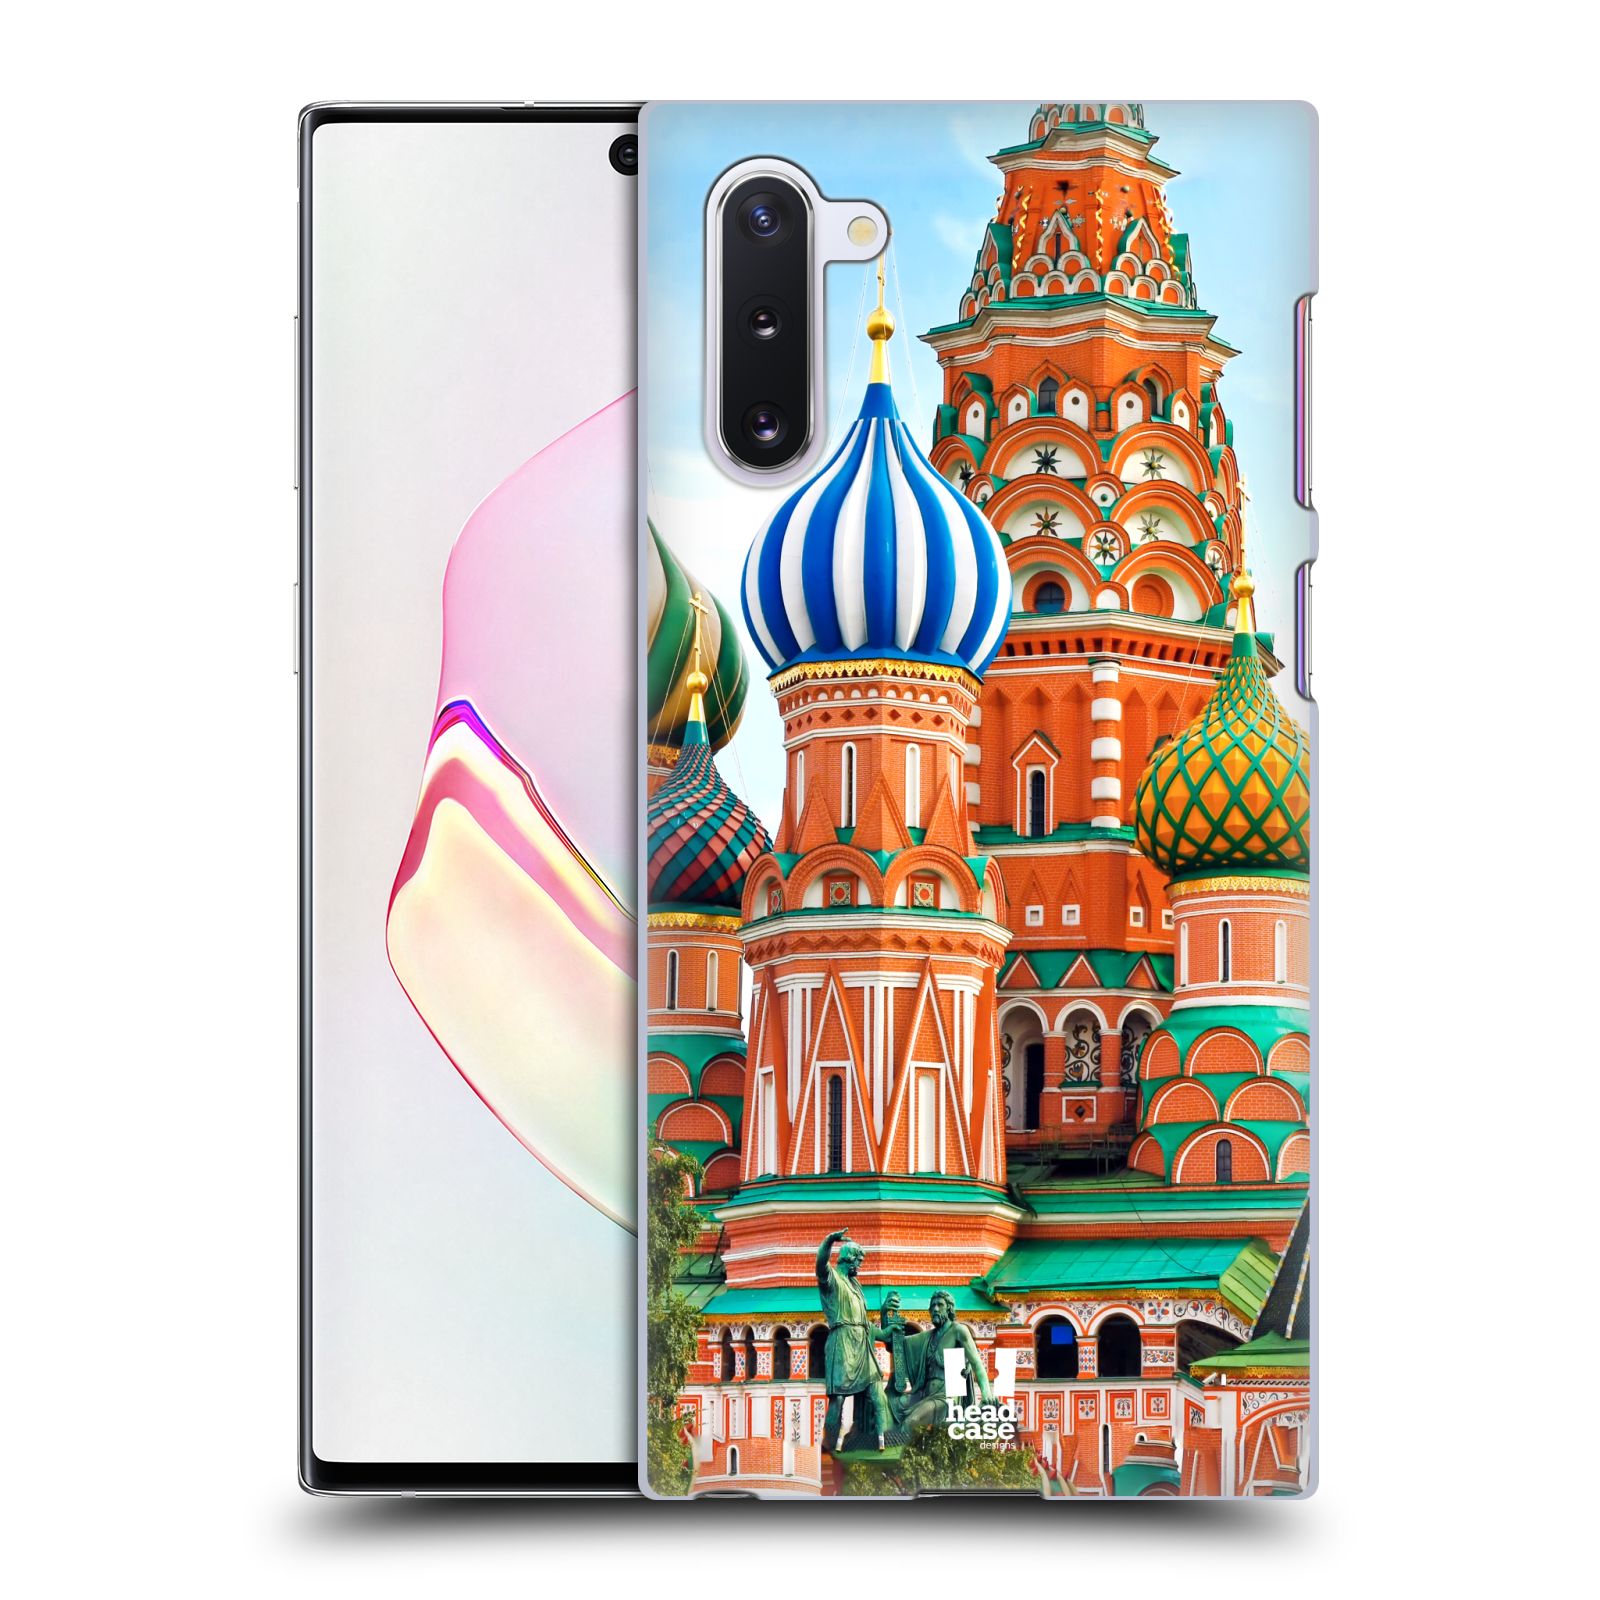 Pouzdro na mobil Samsung Galaxy Note 10 - HEAD CASE - vzor Města foto náměstí RUSKO,MOSKVA, RUDÉ NÁMĚSTÍ